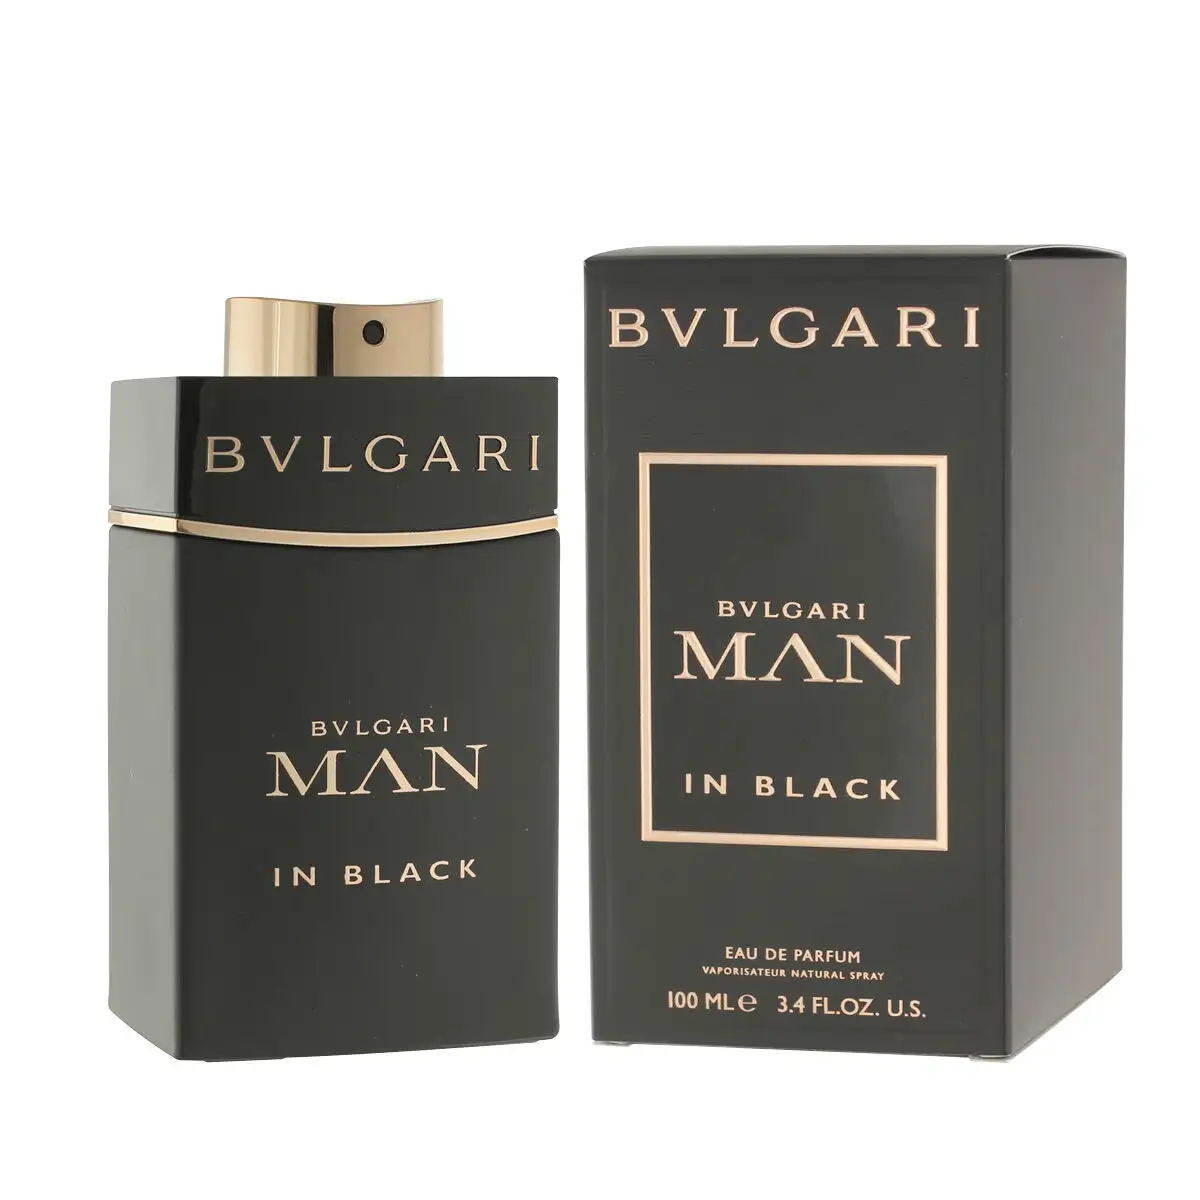 Parfum homme bvlgari edp man in black 100 ml_2449. DIAYTAR SENEGAL - Là où Chaque Produit est une Trouvaille Unique. Découvrez notre boutique en ligne et trouvez des articles qui vous distinguent par leur originalité.